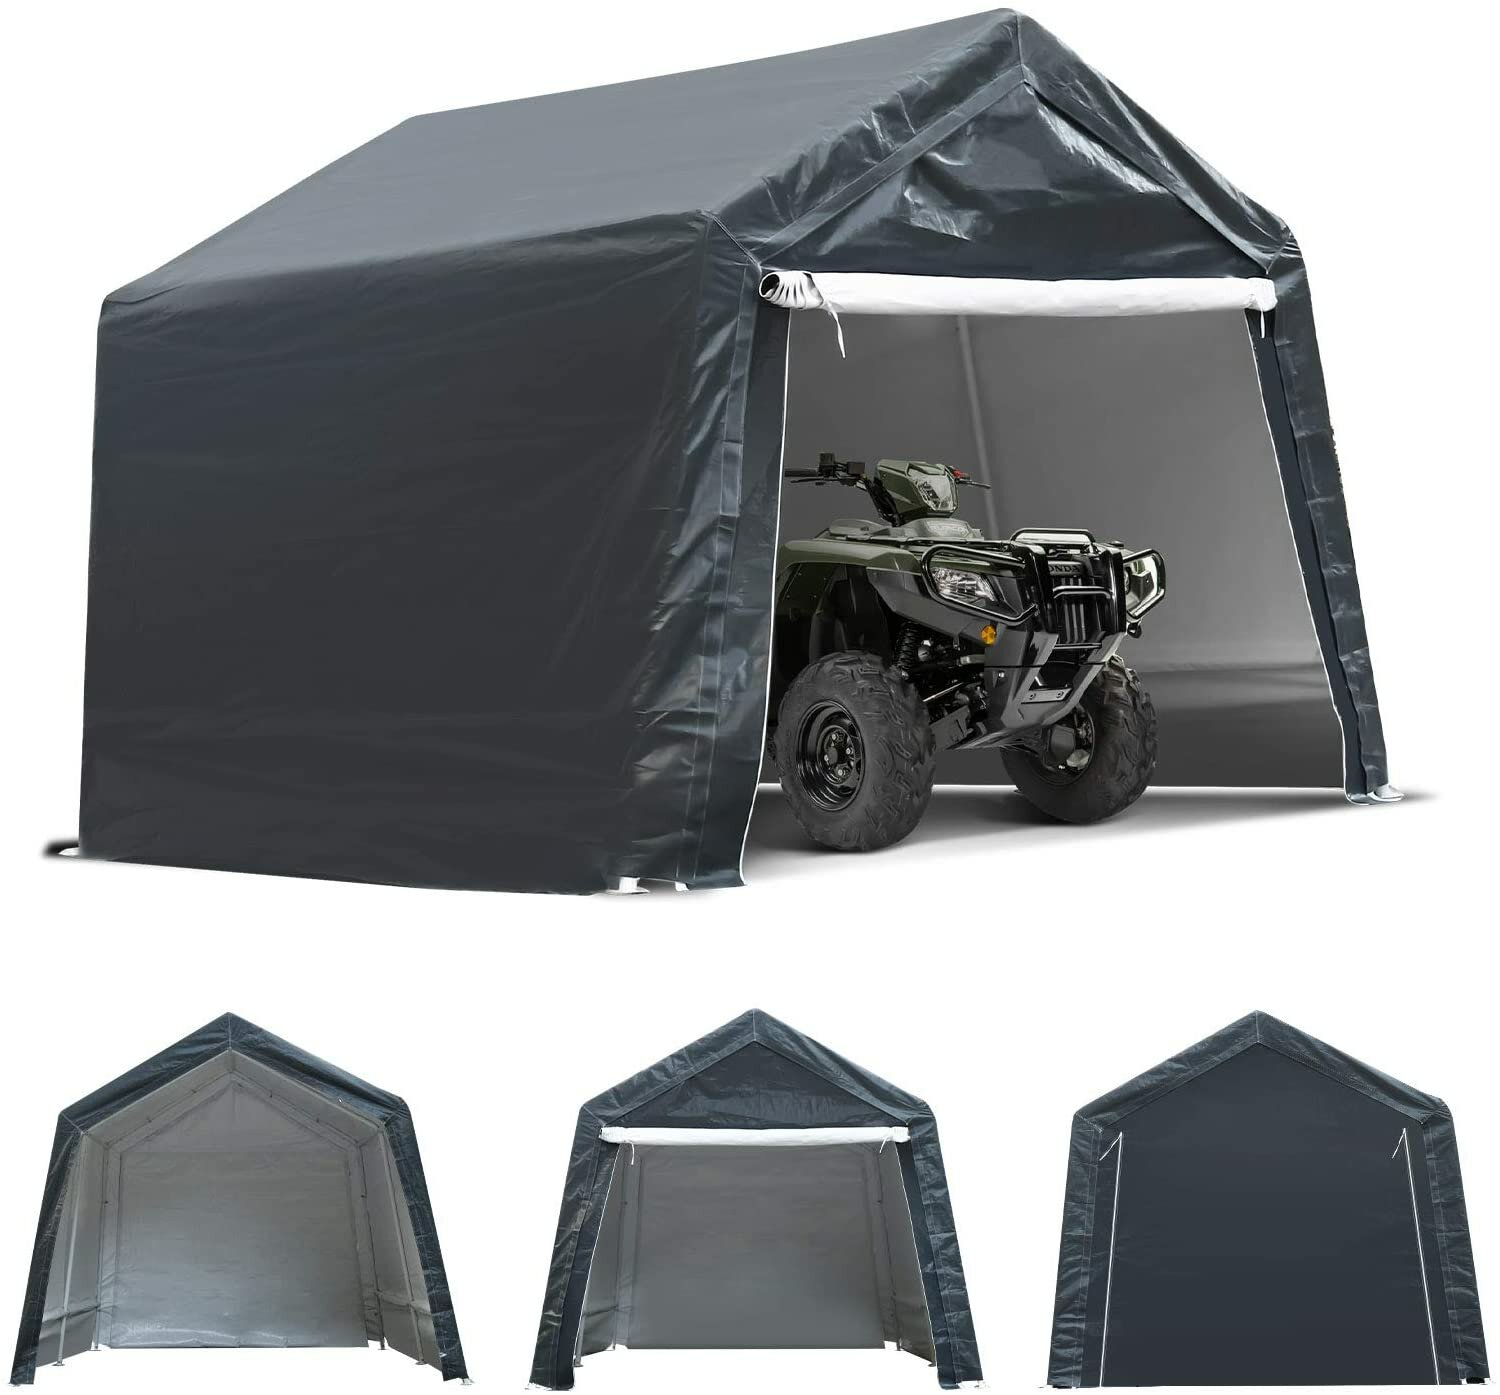 2x7,4 Ft Motosiklet Garajı Taşınabilir UV Su Geçirmez Kapak Depolama Barakası Kamp Tent Canopy Shelter Bahçe Veranda